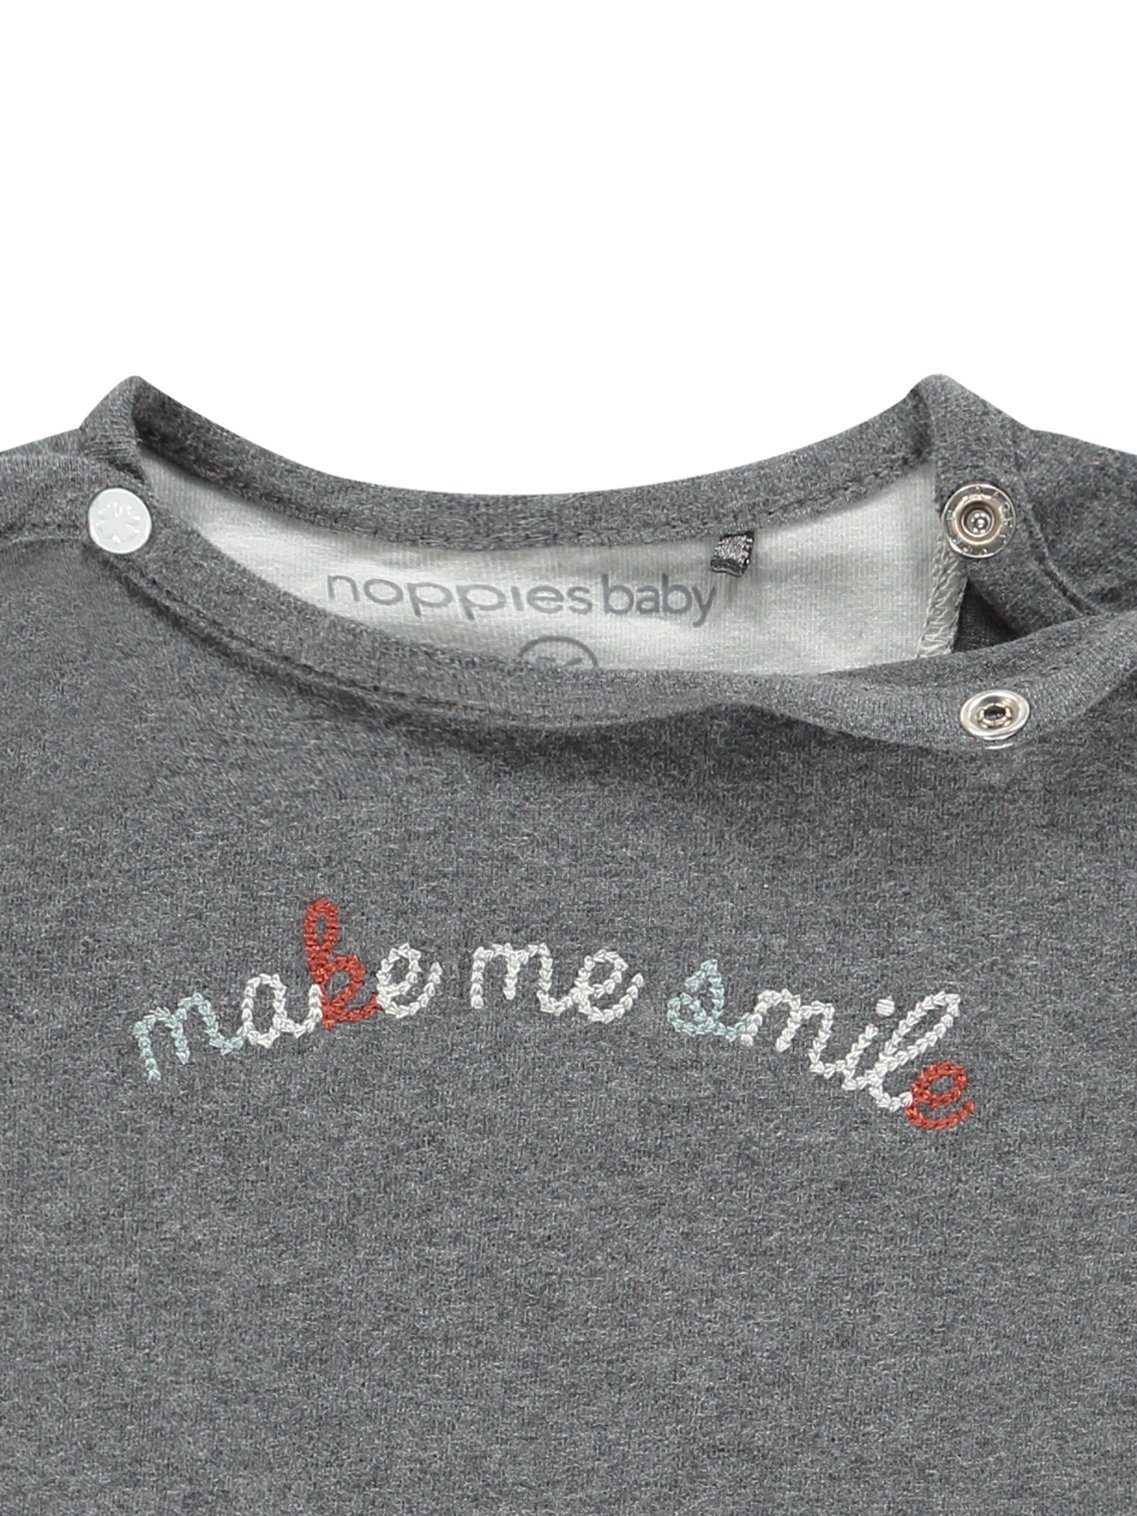 Grey "Make Me Smile" top - Organic Cotton - Top / T-shirt - Noppies